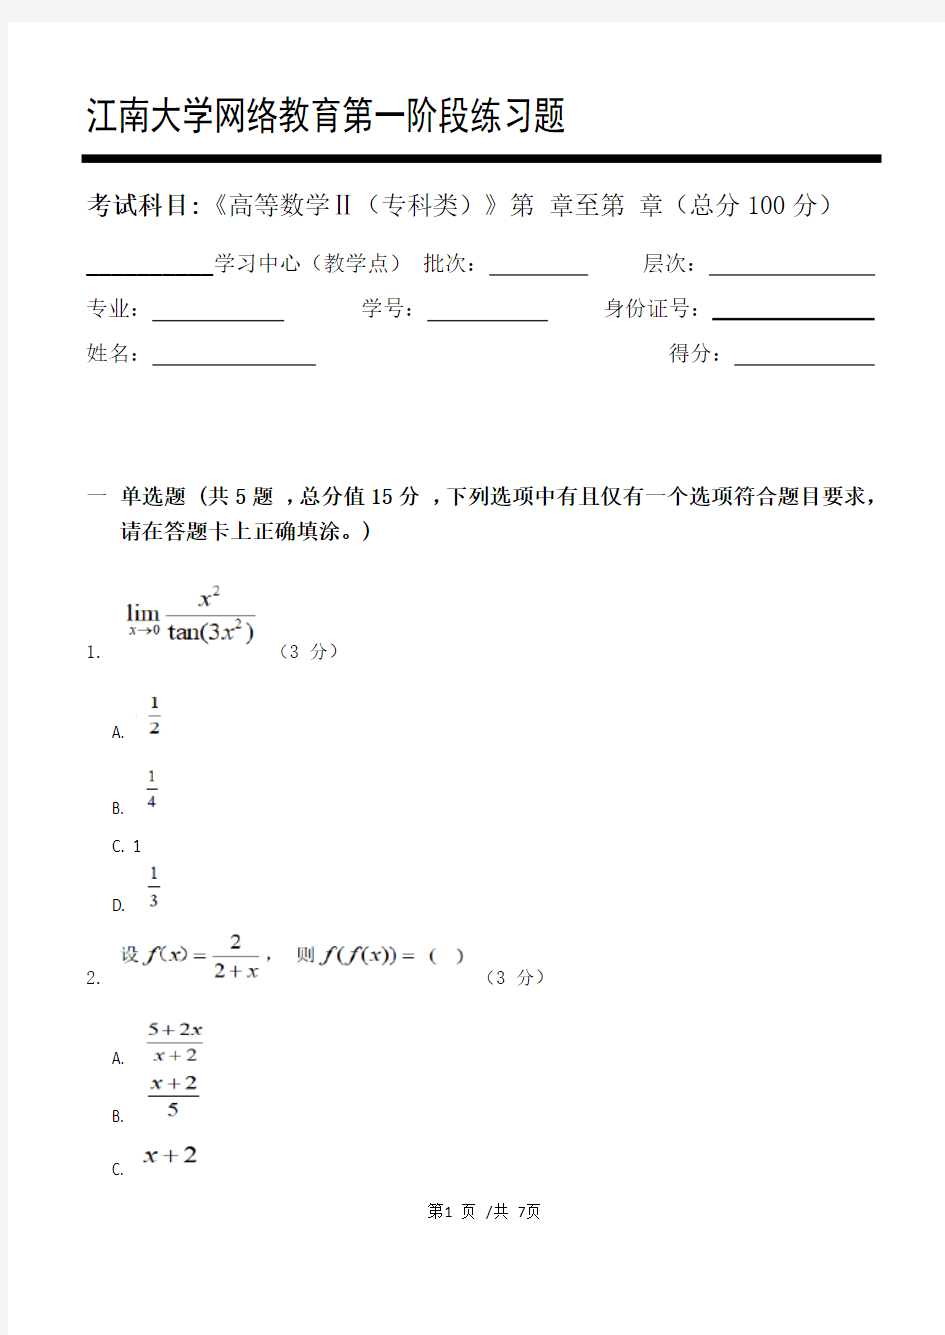 高等数学Ⅱ(专科类)第1阶段练习题   江南大学  考试题库及答案  一科共有三个阶段,这是其中一个阶段。